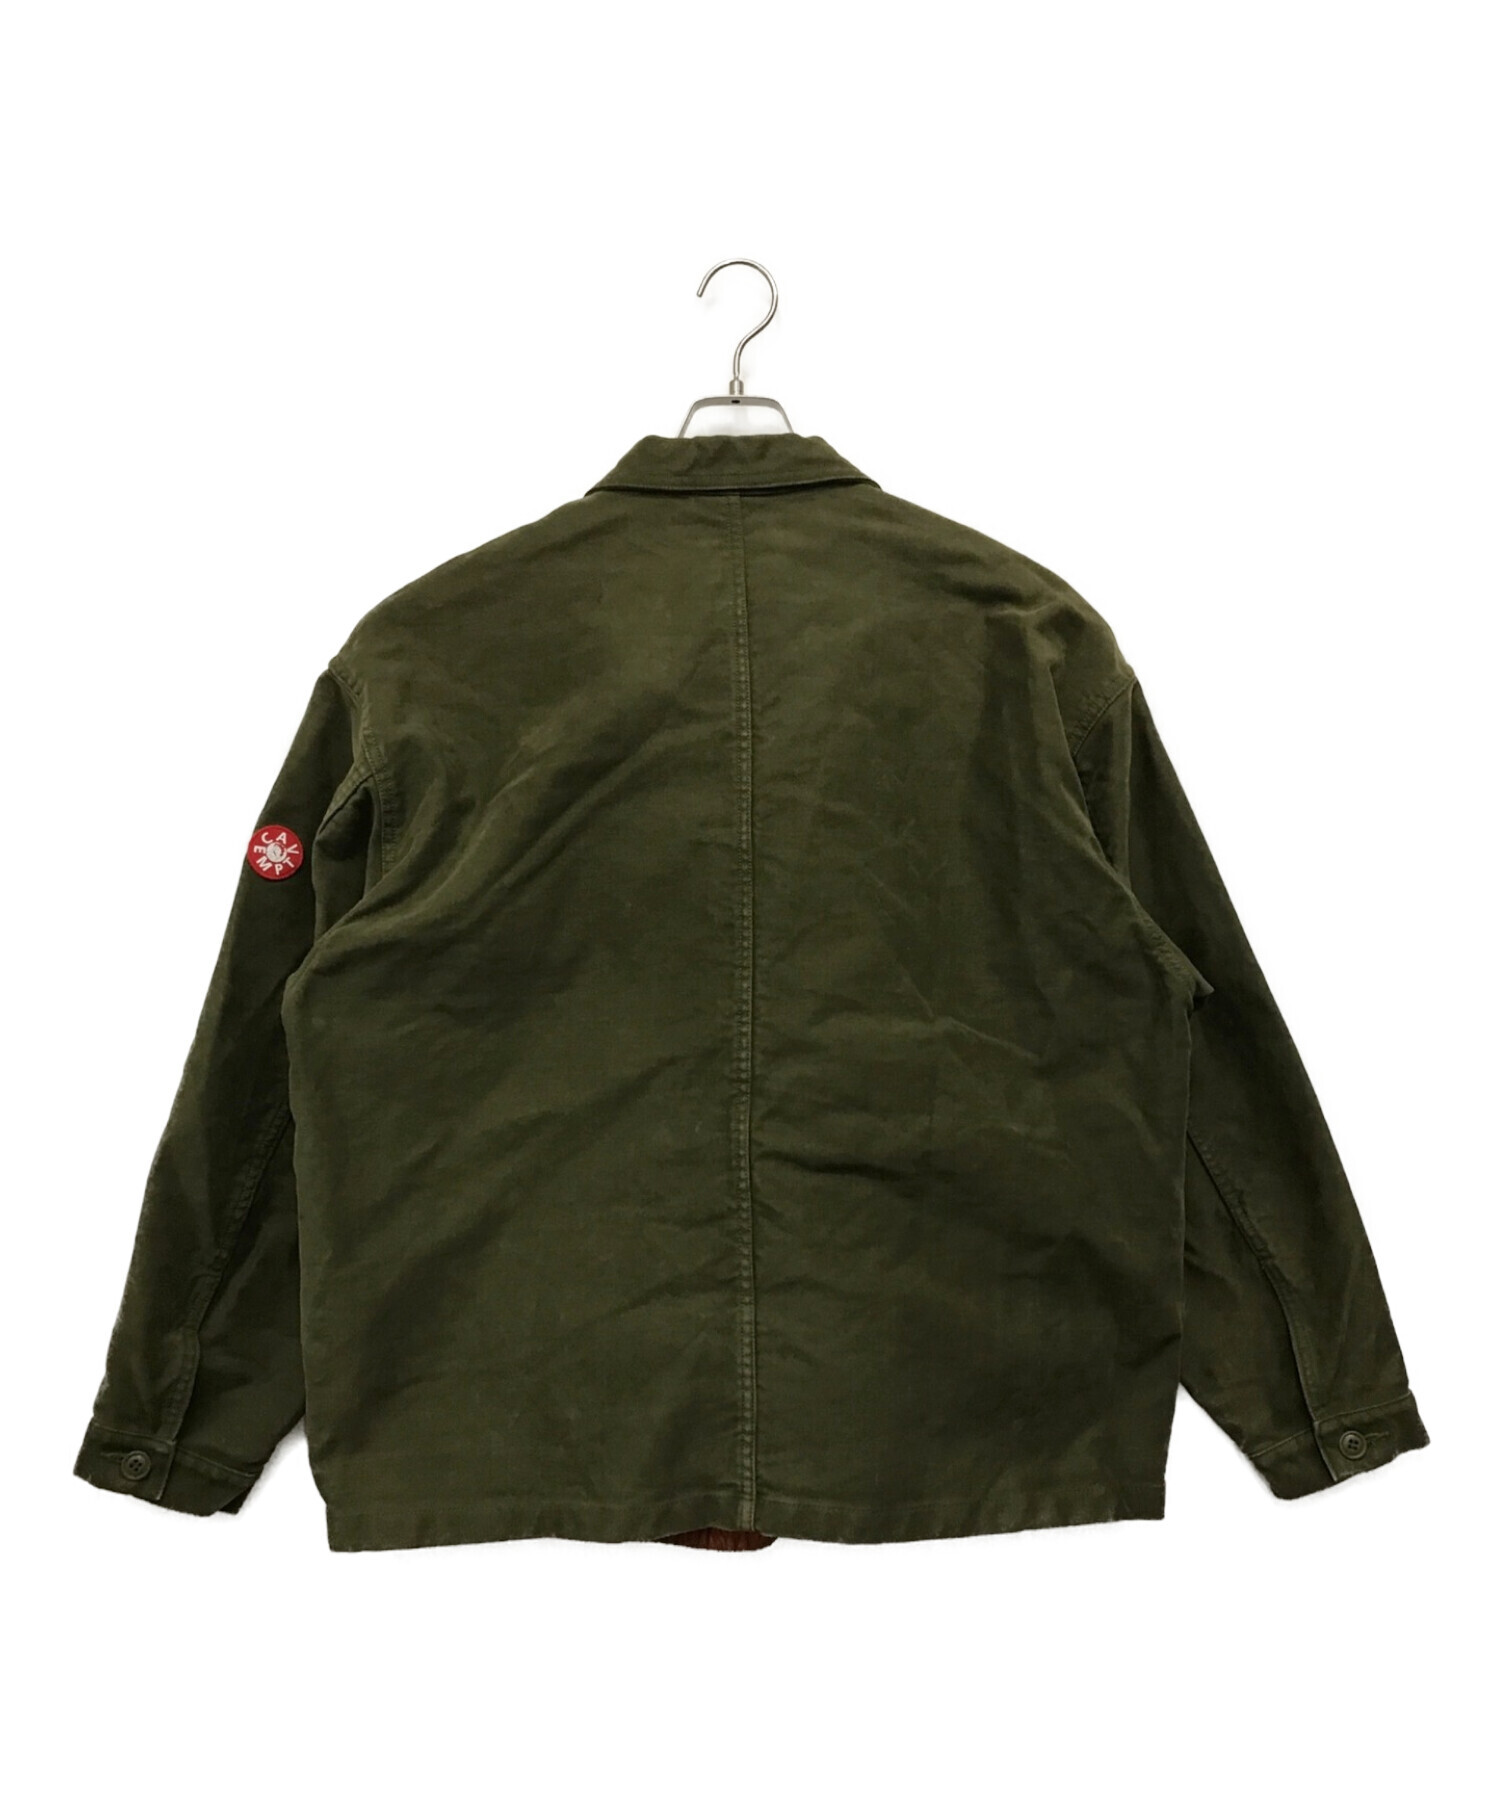 C.E (シーイー) カバードインシュレーションジャケット covered insulation jacket カーキ サイズ:L